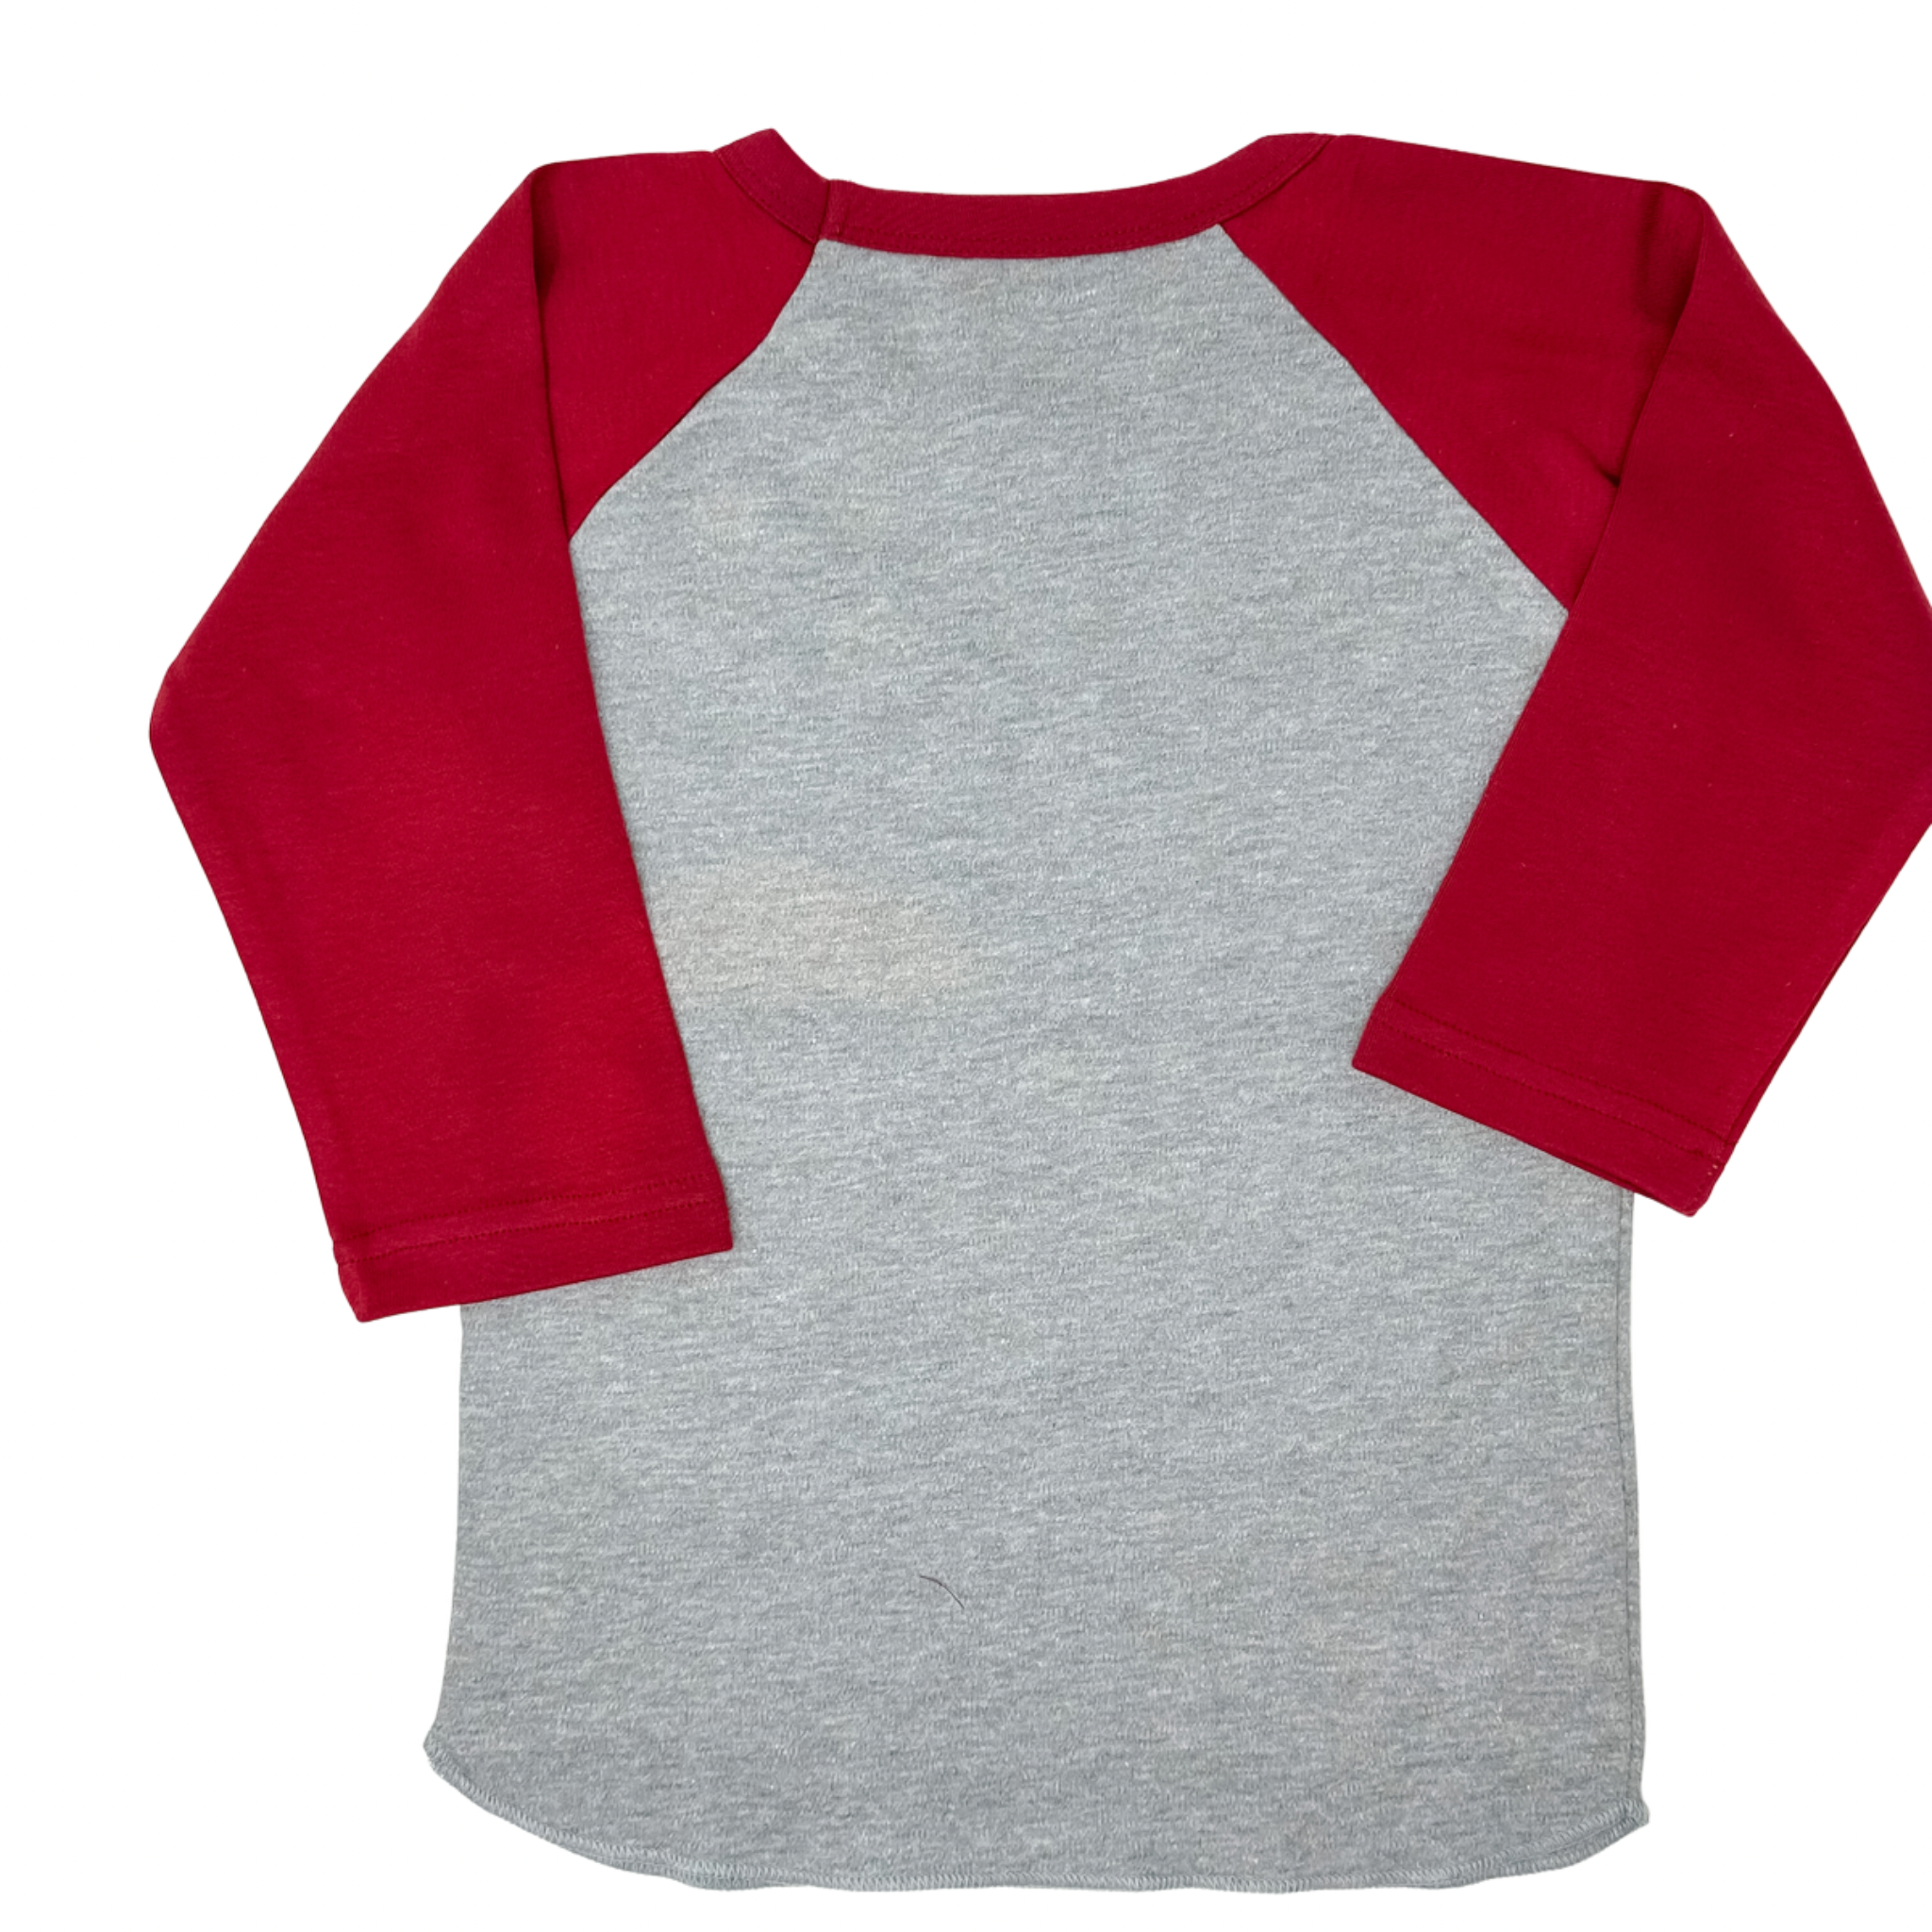 Creative Knitwear - Baseball Shirt - Bama Crimson